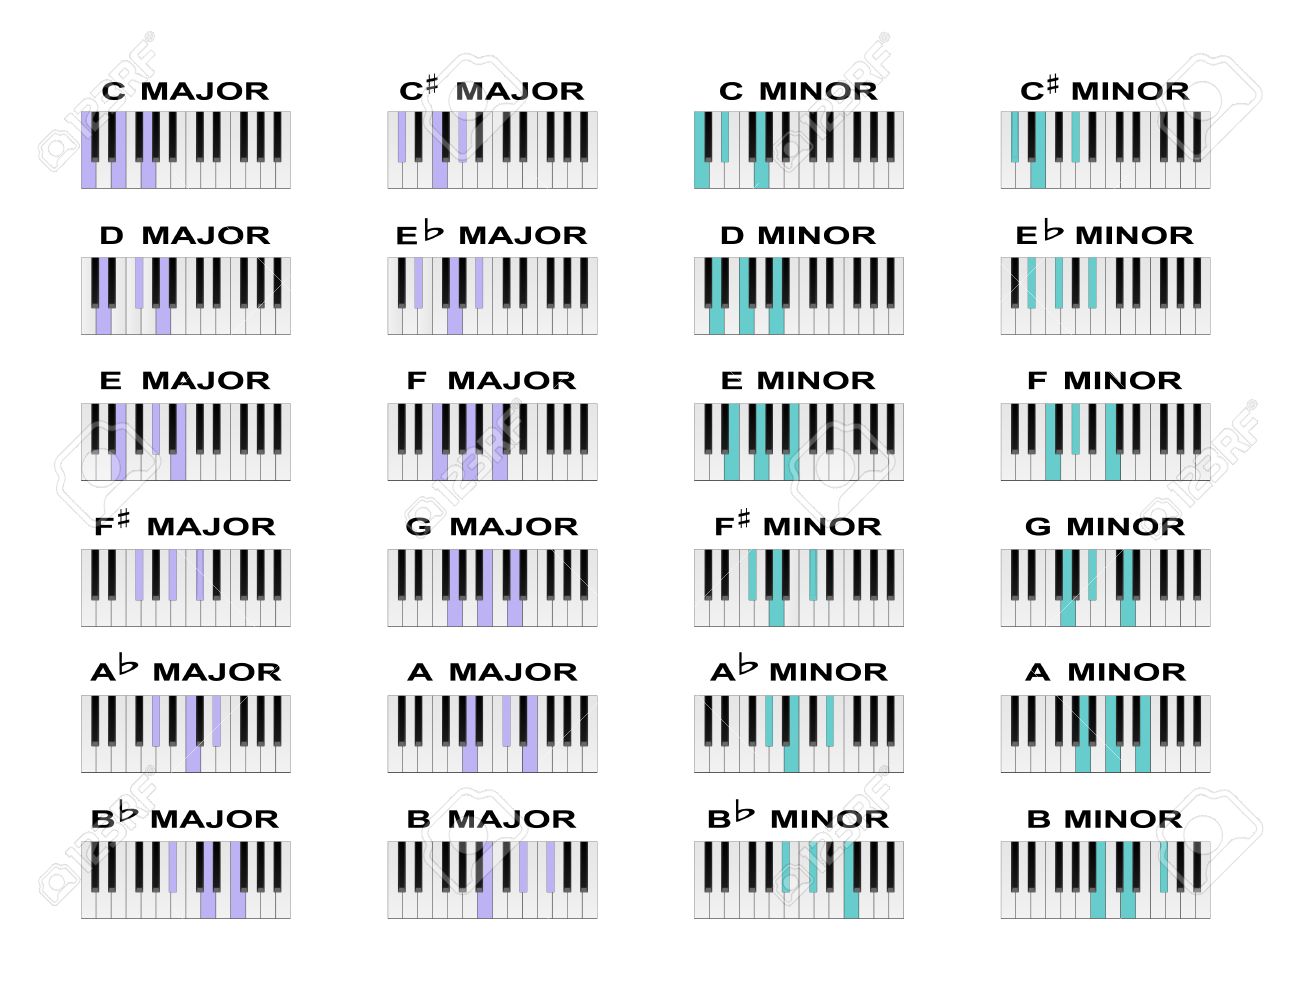 Klavier: Akkord-Tabellen komplett unterschiedlich, warum ...